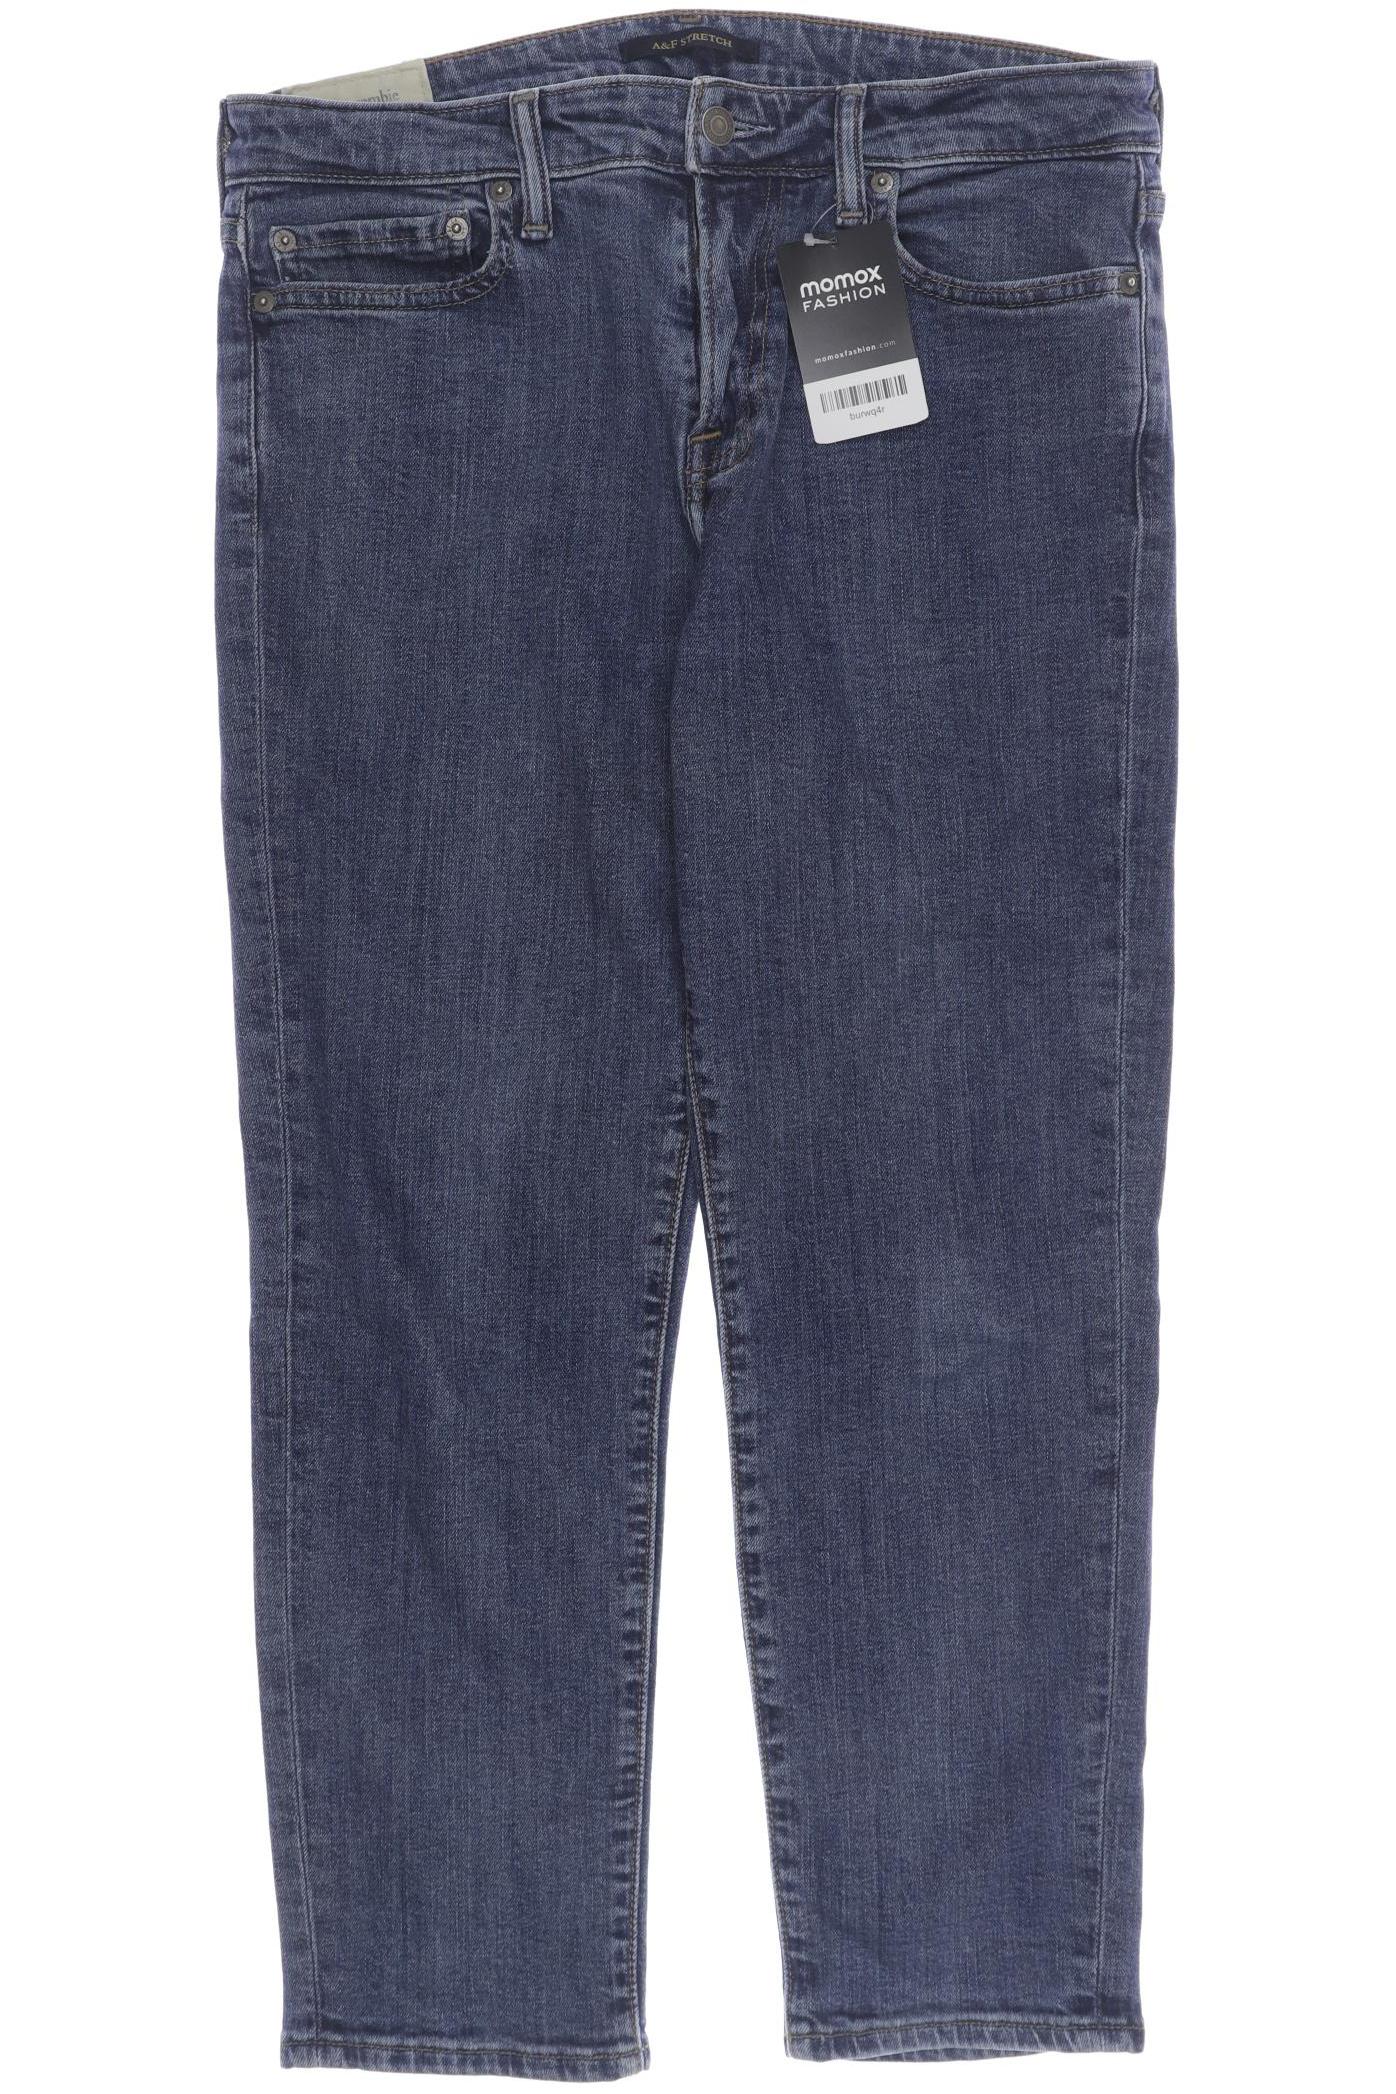 Abercrombie & Fitch Herren Jeans, blau von Abercrombie & Fitch